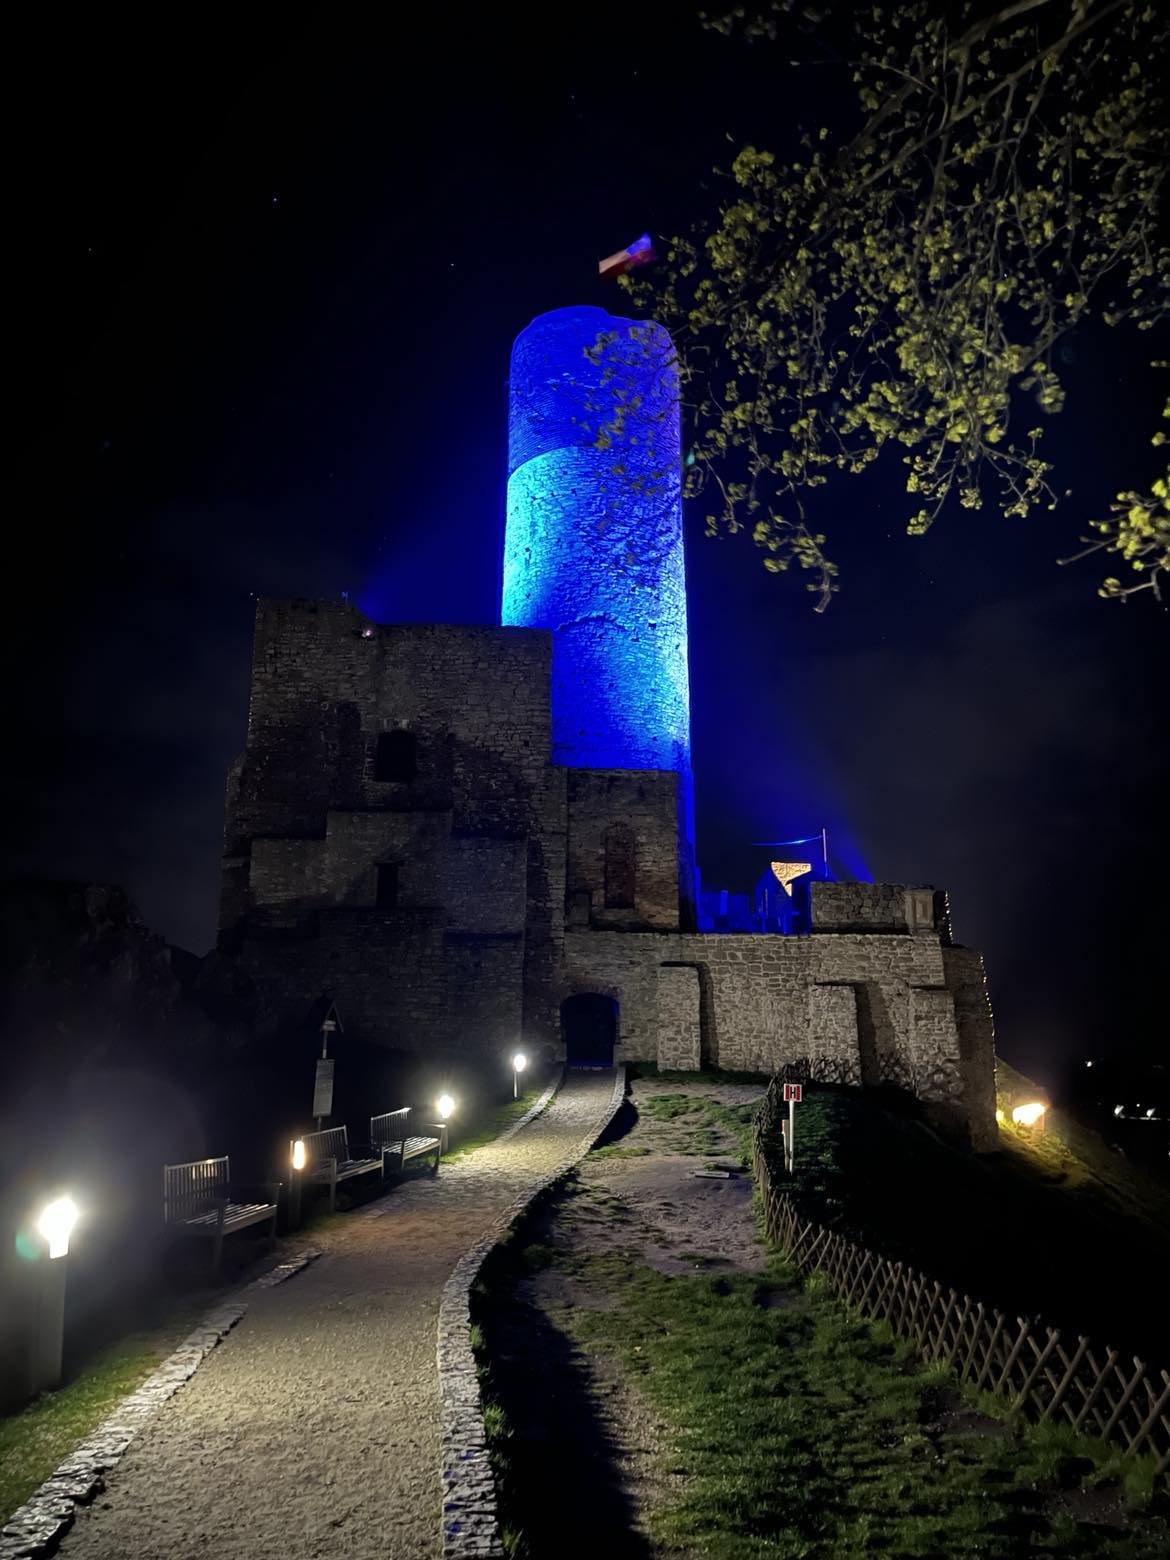 Zamek Królewski w Chęcinach w niebieskich barwach z okazji Światowego Dnia Świadomości Autyzmu